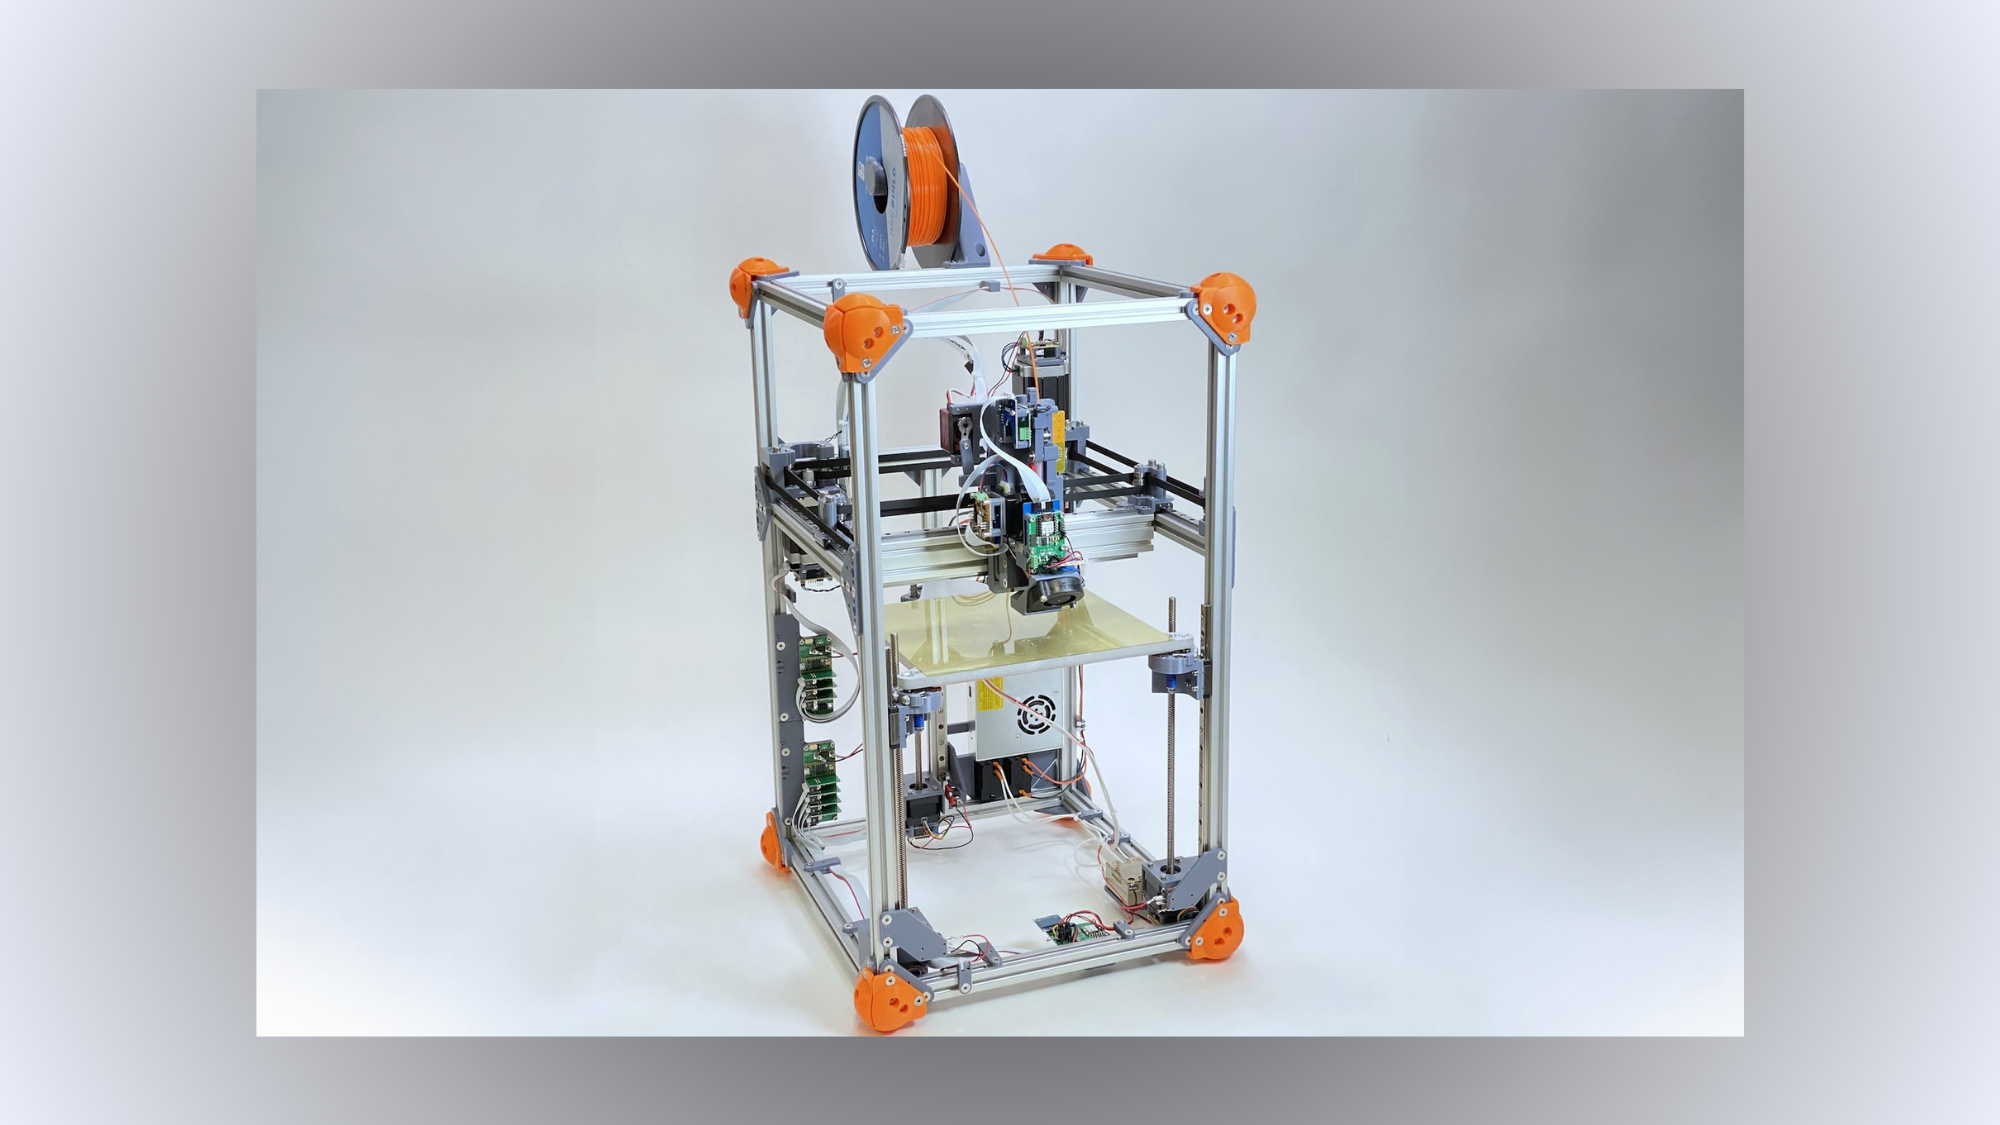 Las impresoras 3D acaban de recibir una gran actualización ecológica (en el laboratorio)